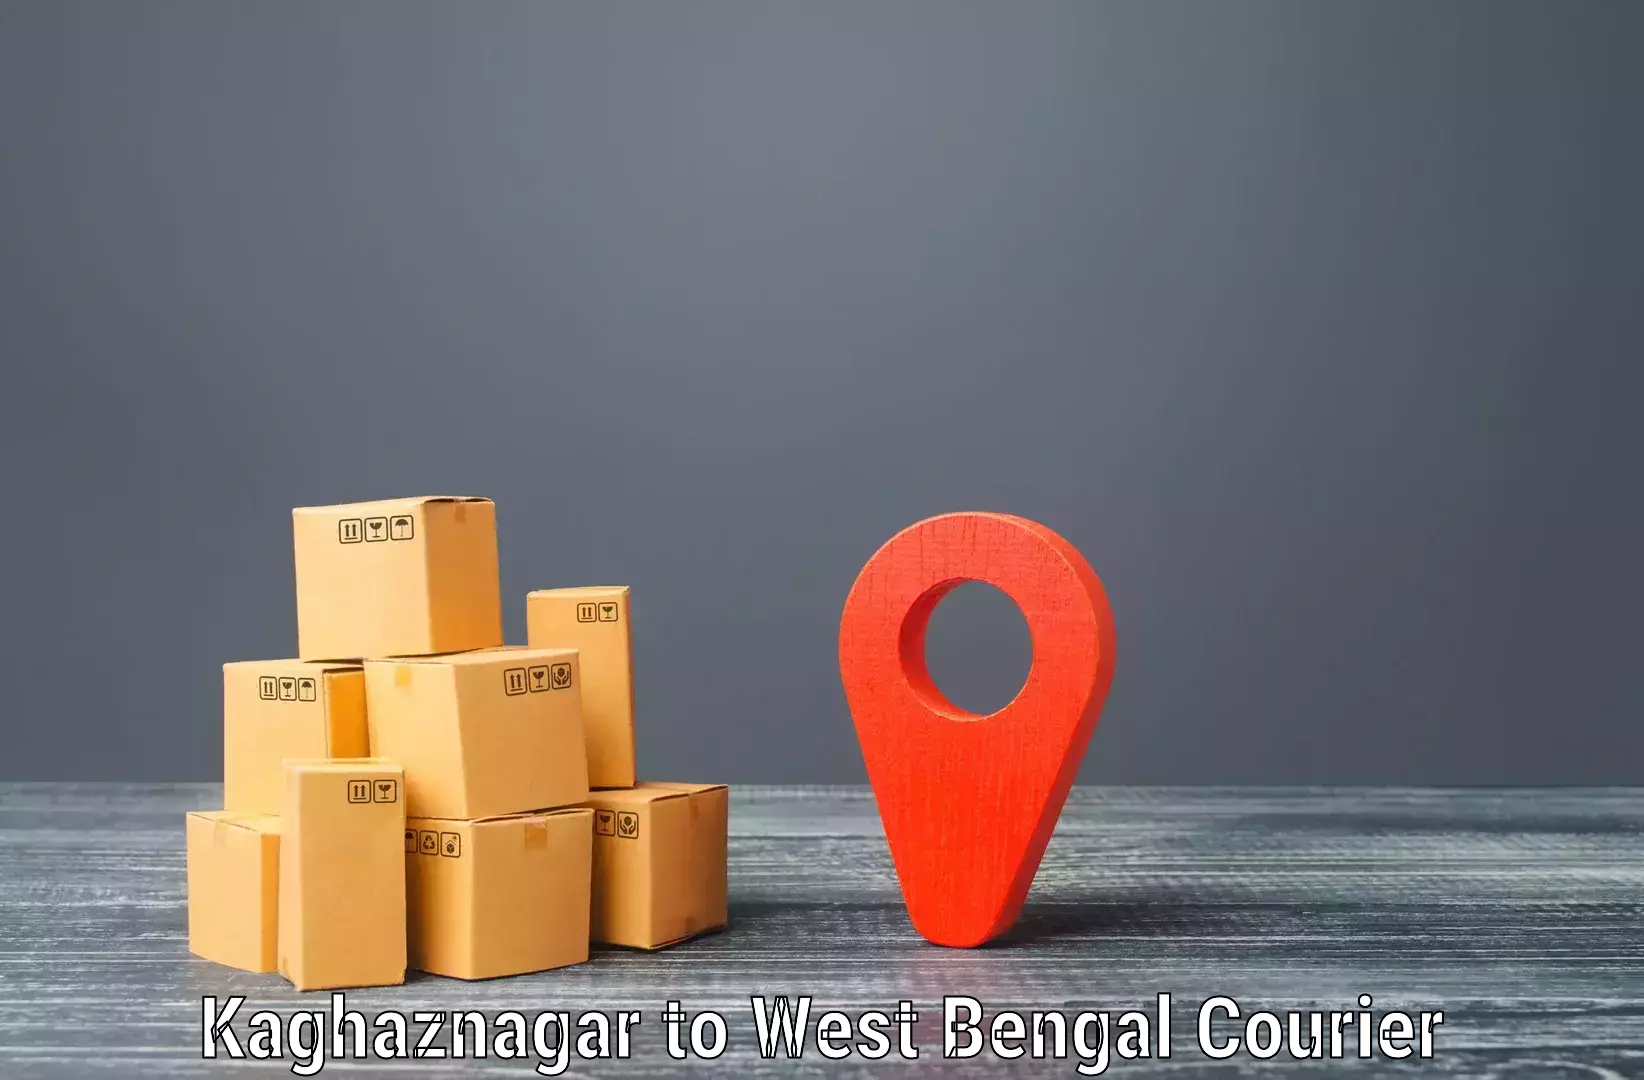 Smart shipping technology Kaghaznagar to Visva Bharati Santiniketan